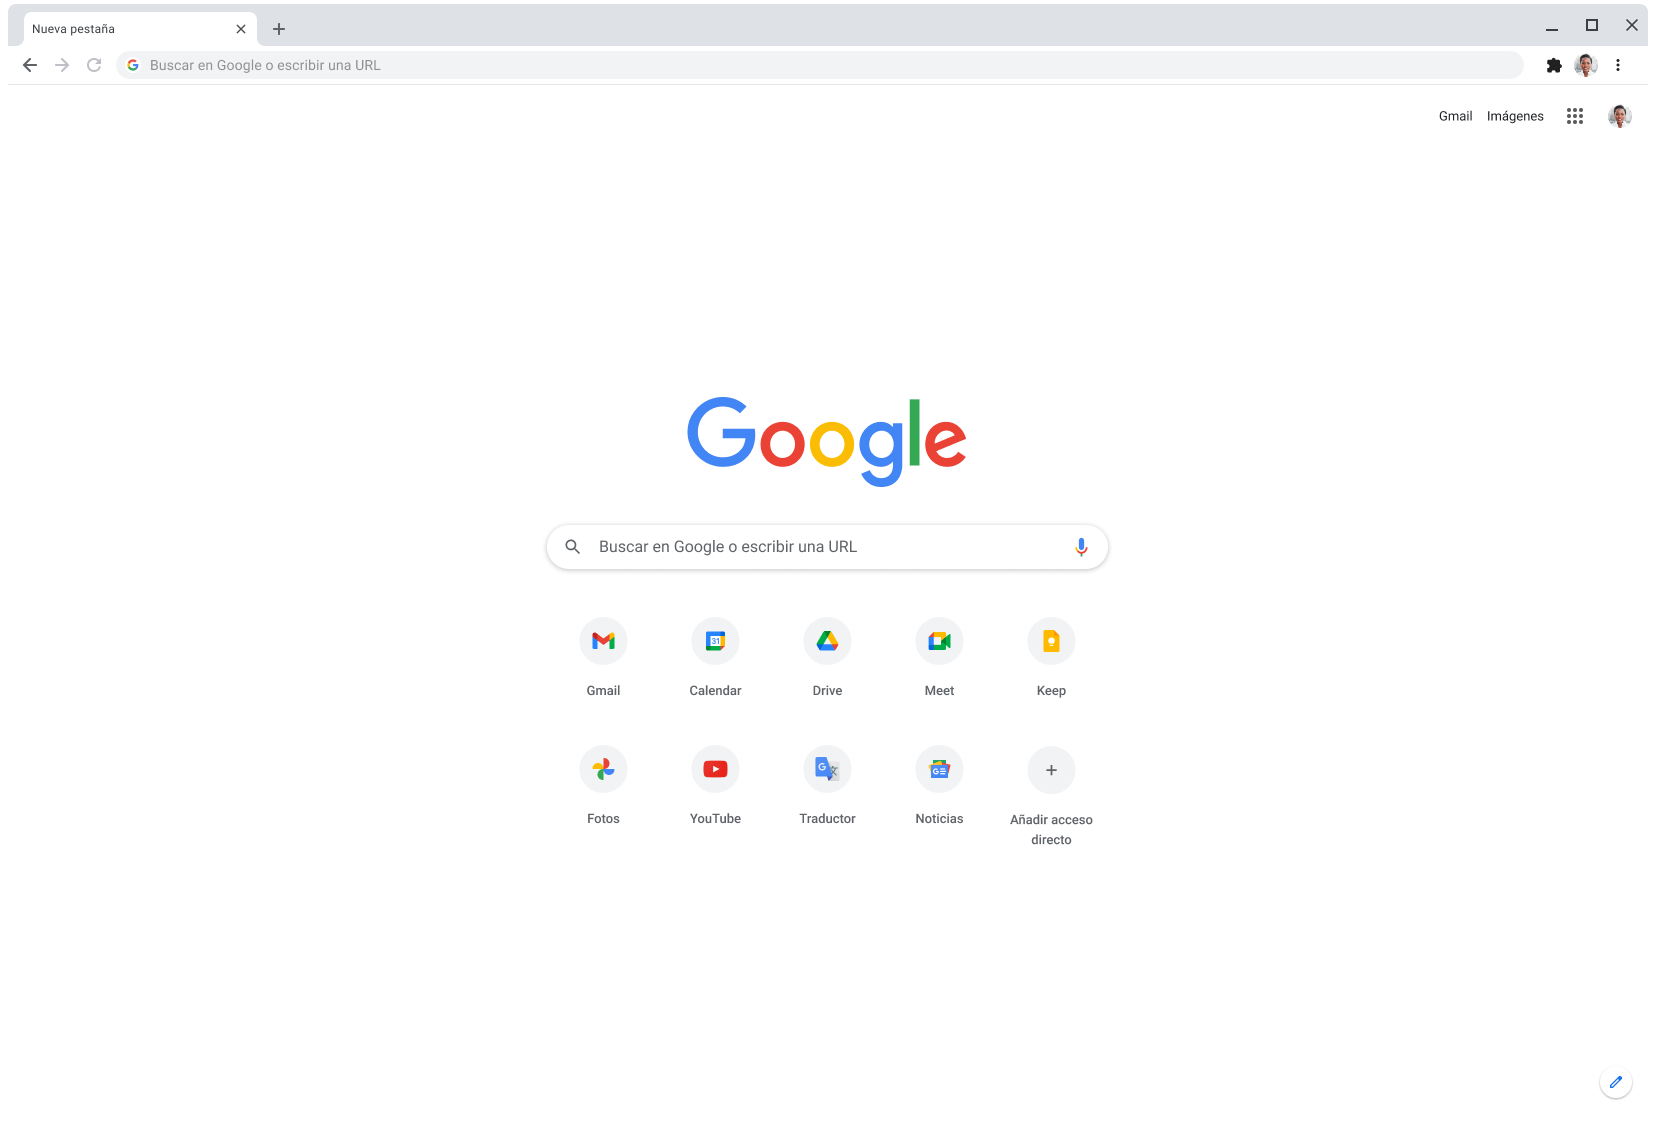 Ventana del navegador Chrome donde se muestra Google.com.